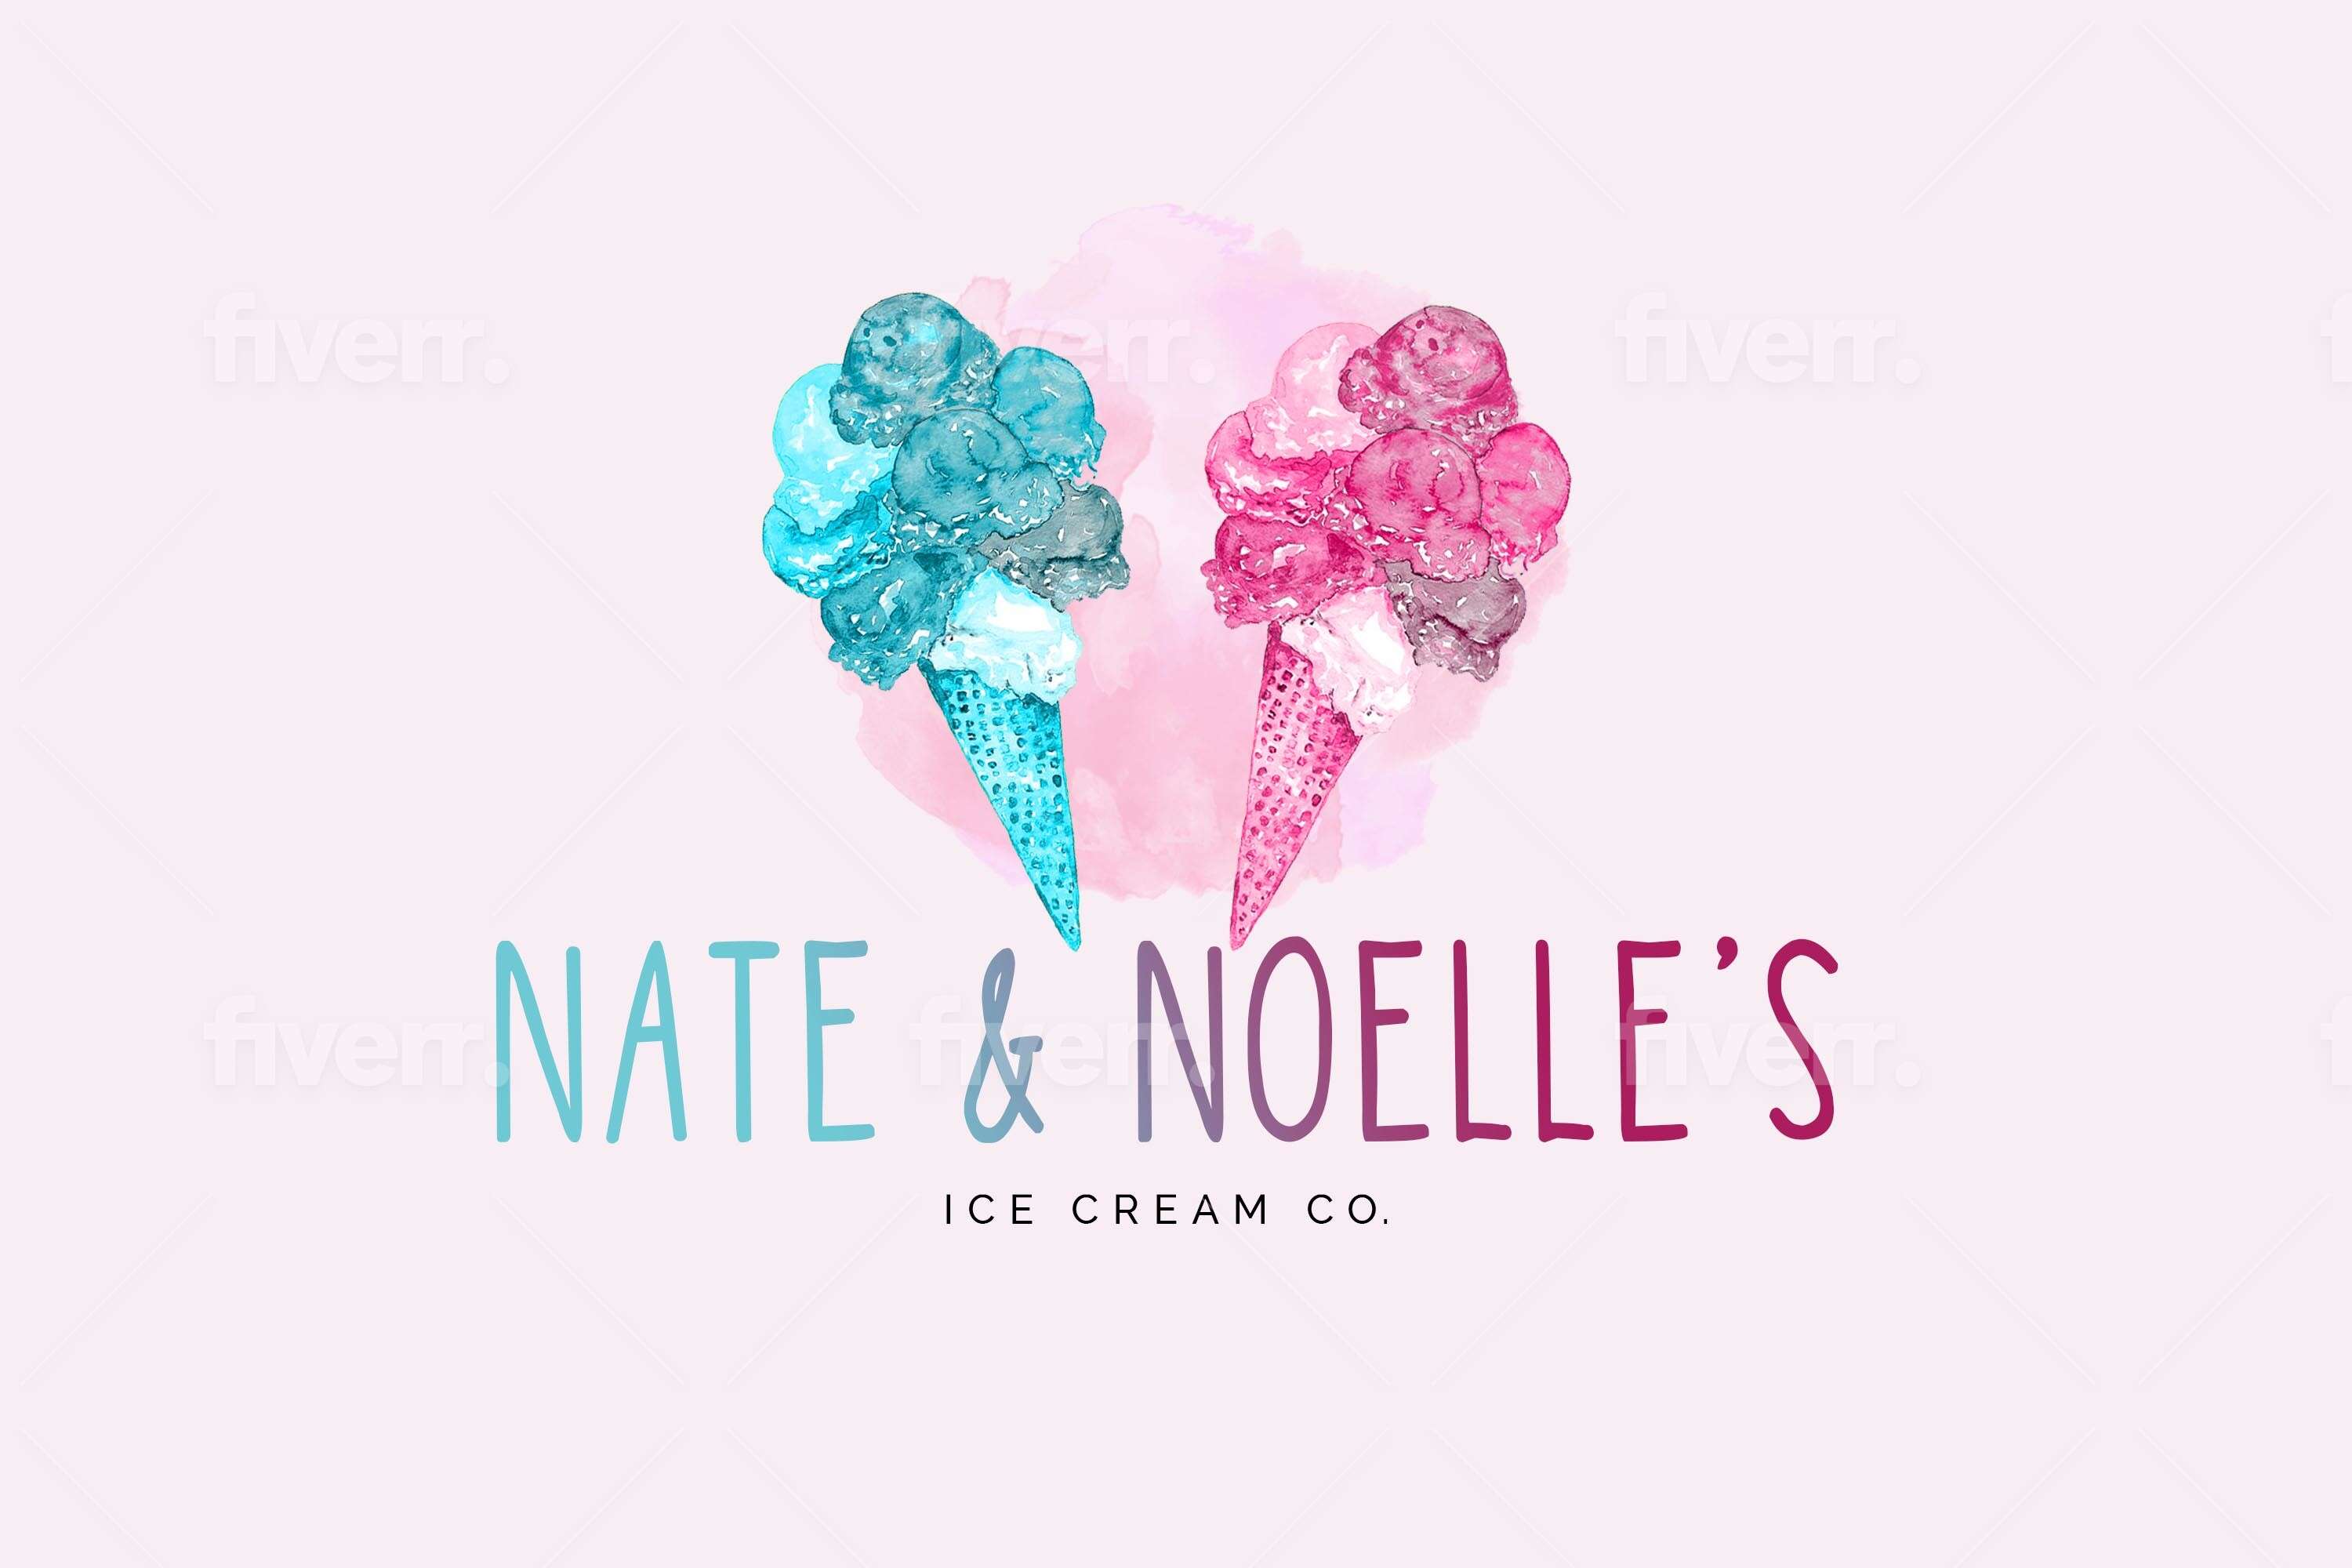 Nate & Noelles